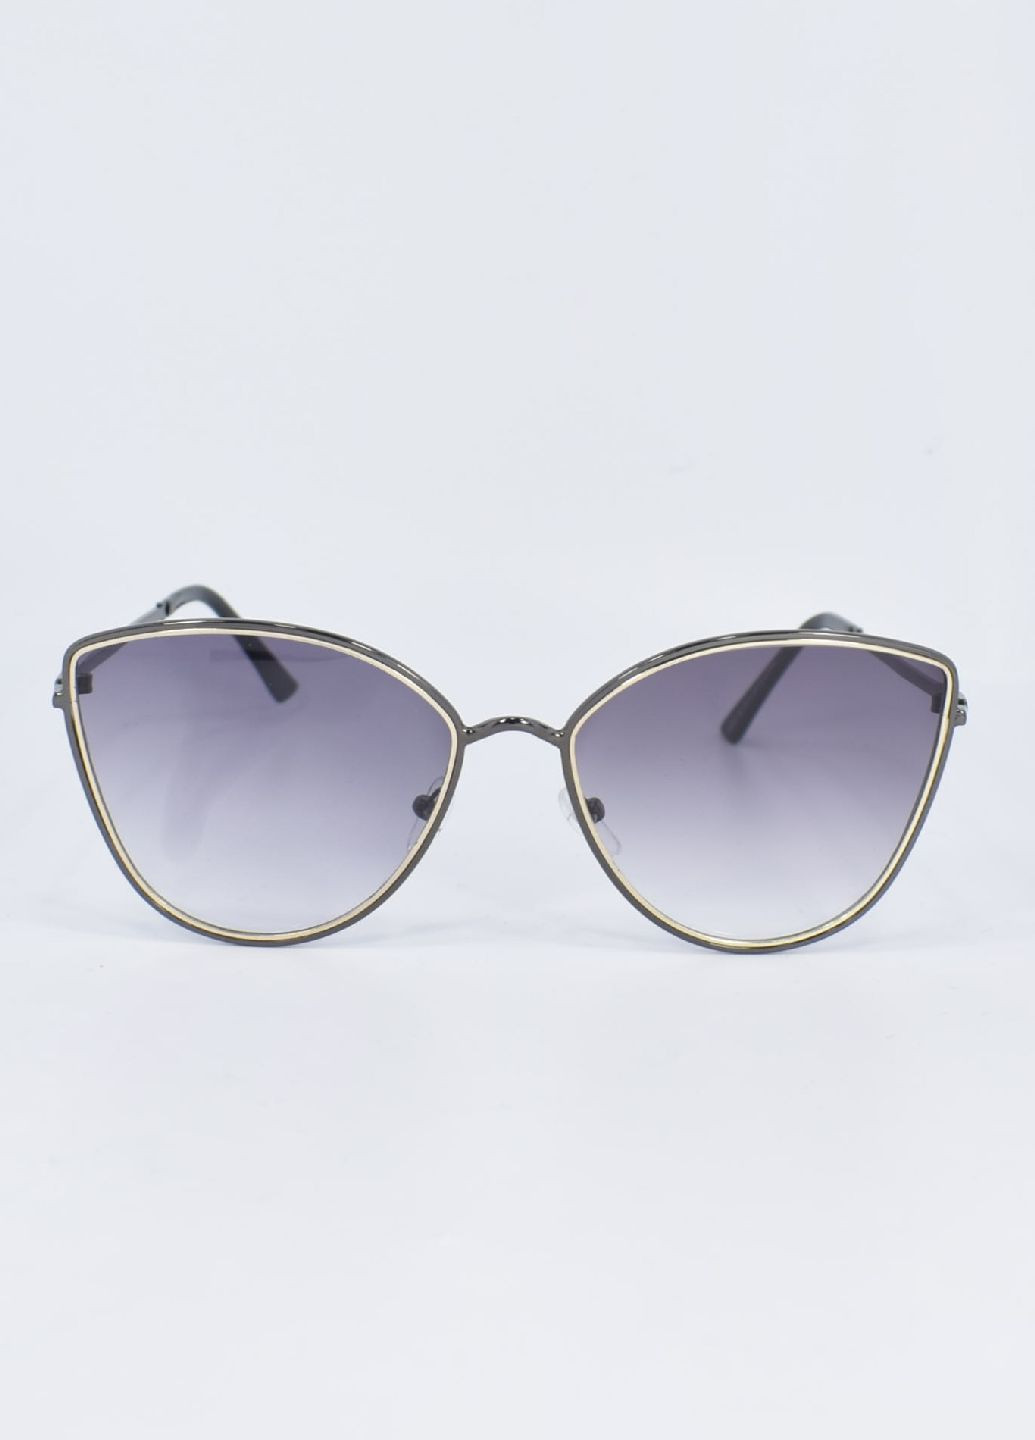 Сонцезахисні окуляри 100116 Merlini чорні